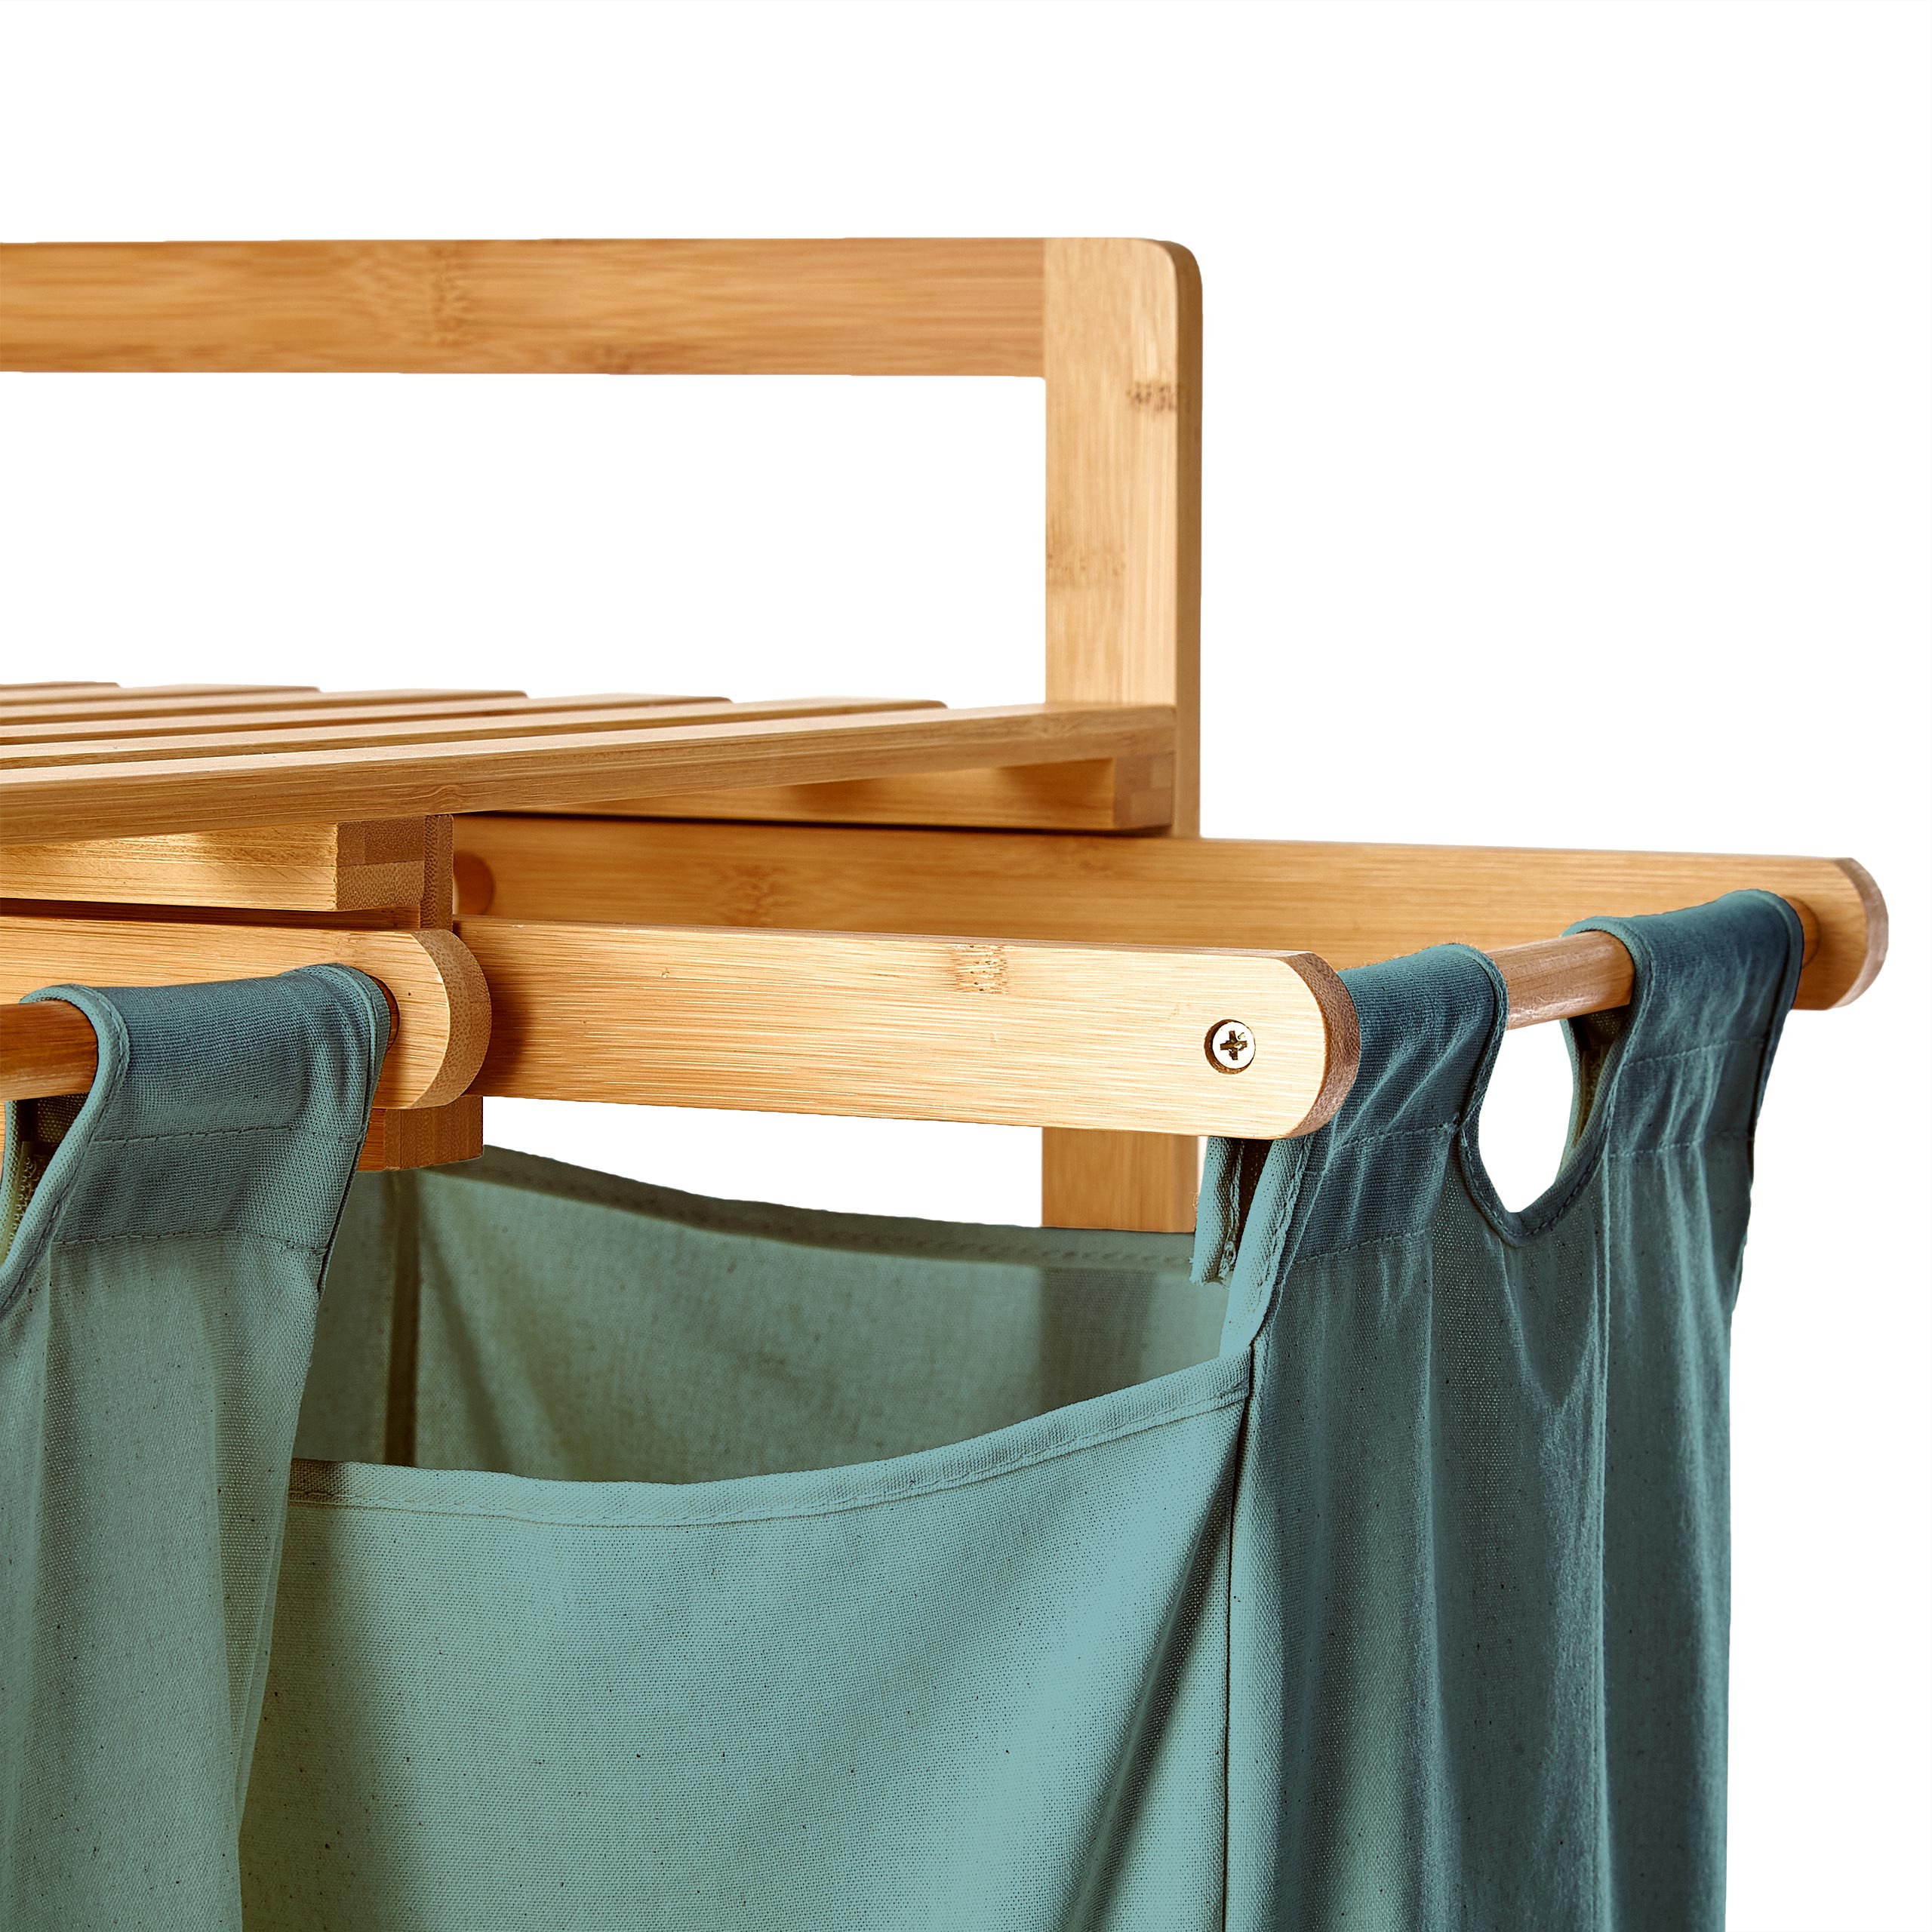 Bambus Wäschekorb mit 2 ausziehbaren Wäschesacken - 73 x 64 x 33 cm - Babyblau